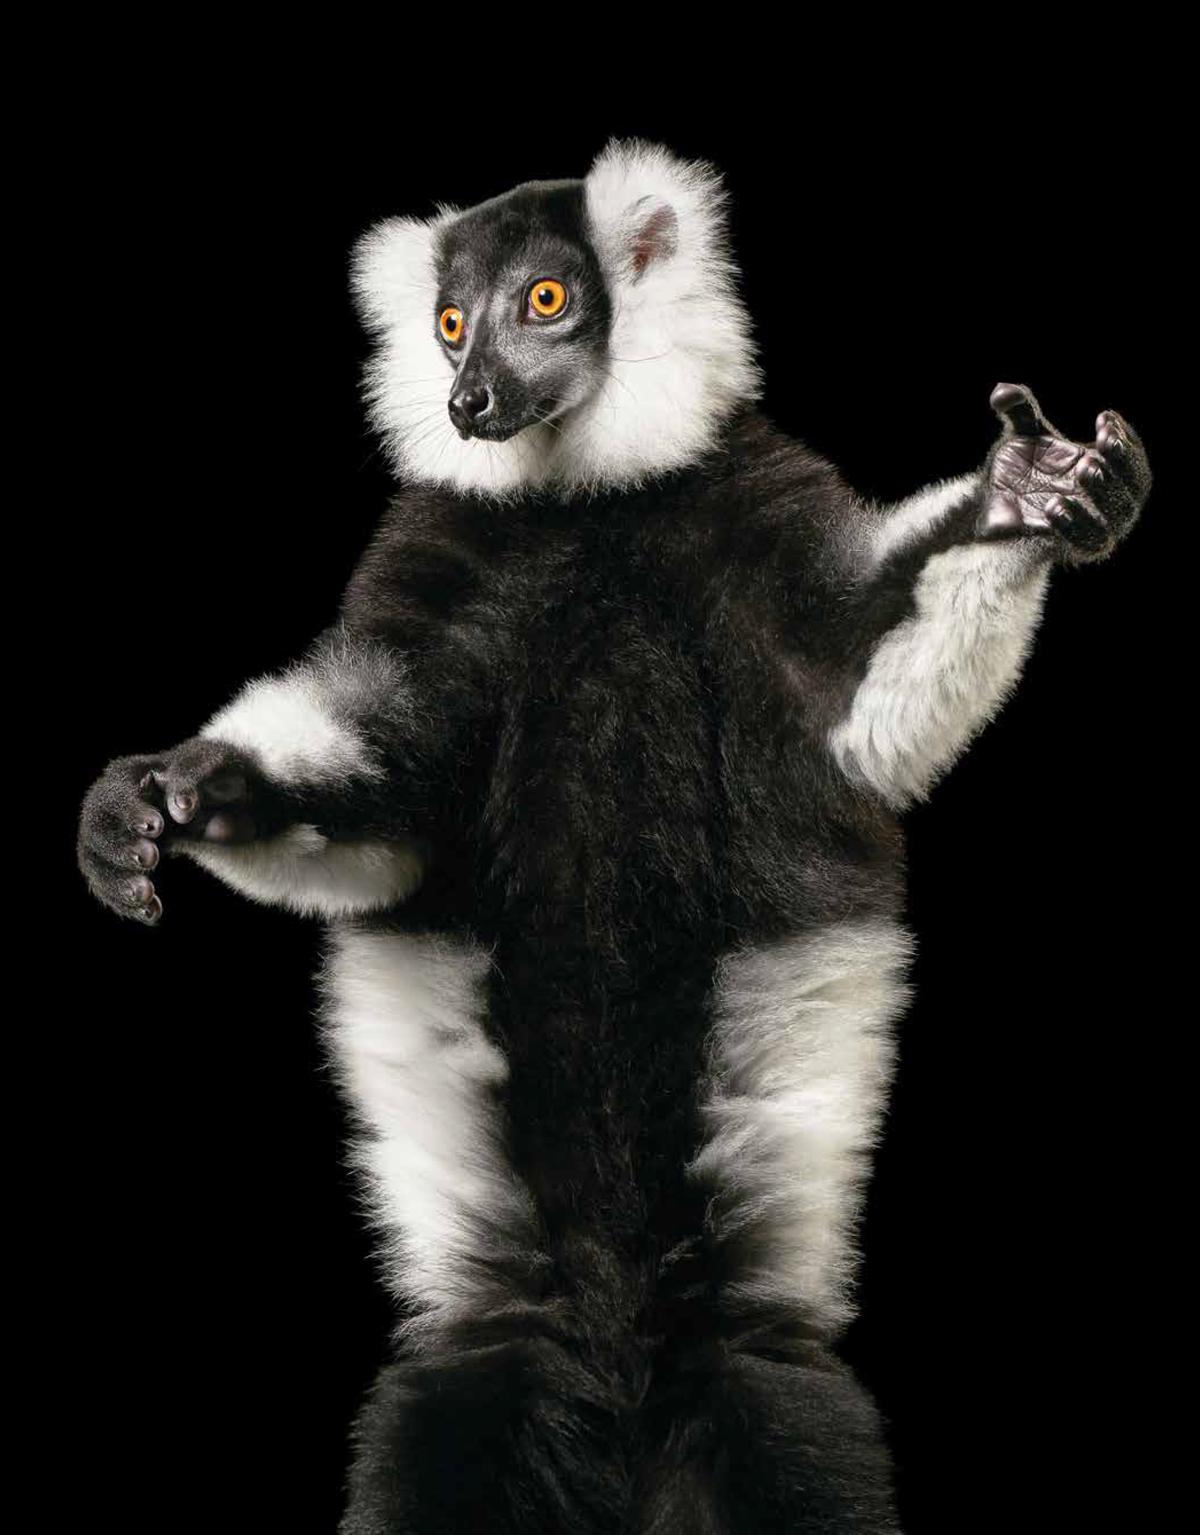 A black-and-white ruffed lemur. (Courtesy of <a href="https://timflach.com/">Tim Flach</a>)